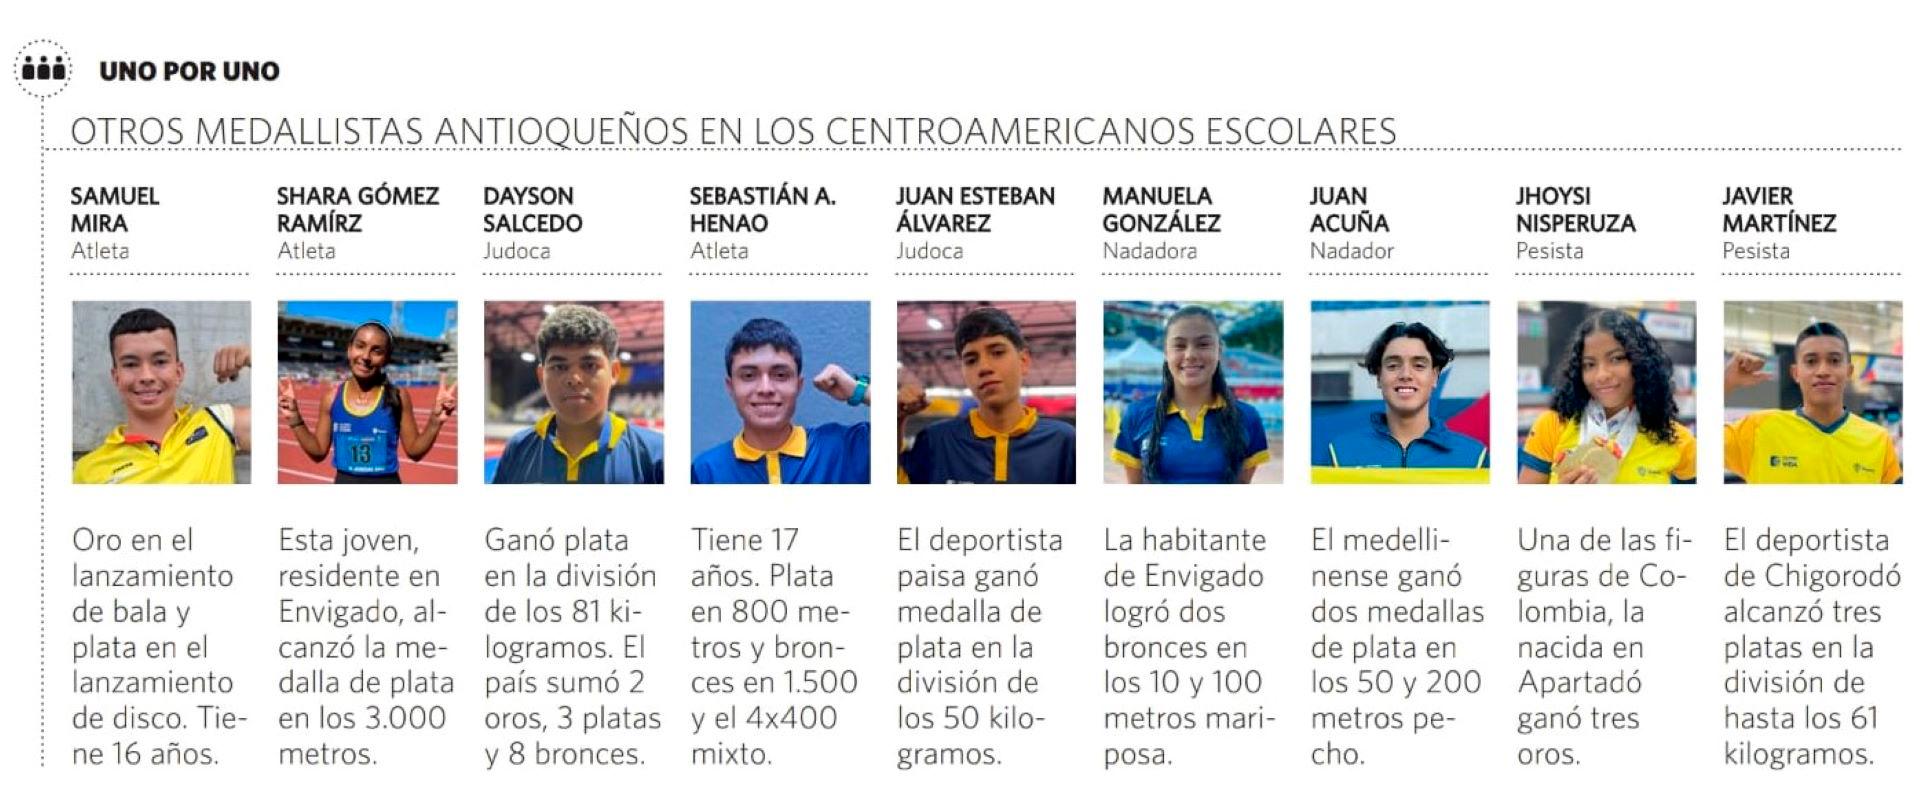 Gran aporte de medallas de los atletas paisas en los Centroamericanos Escolares en Venezuela